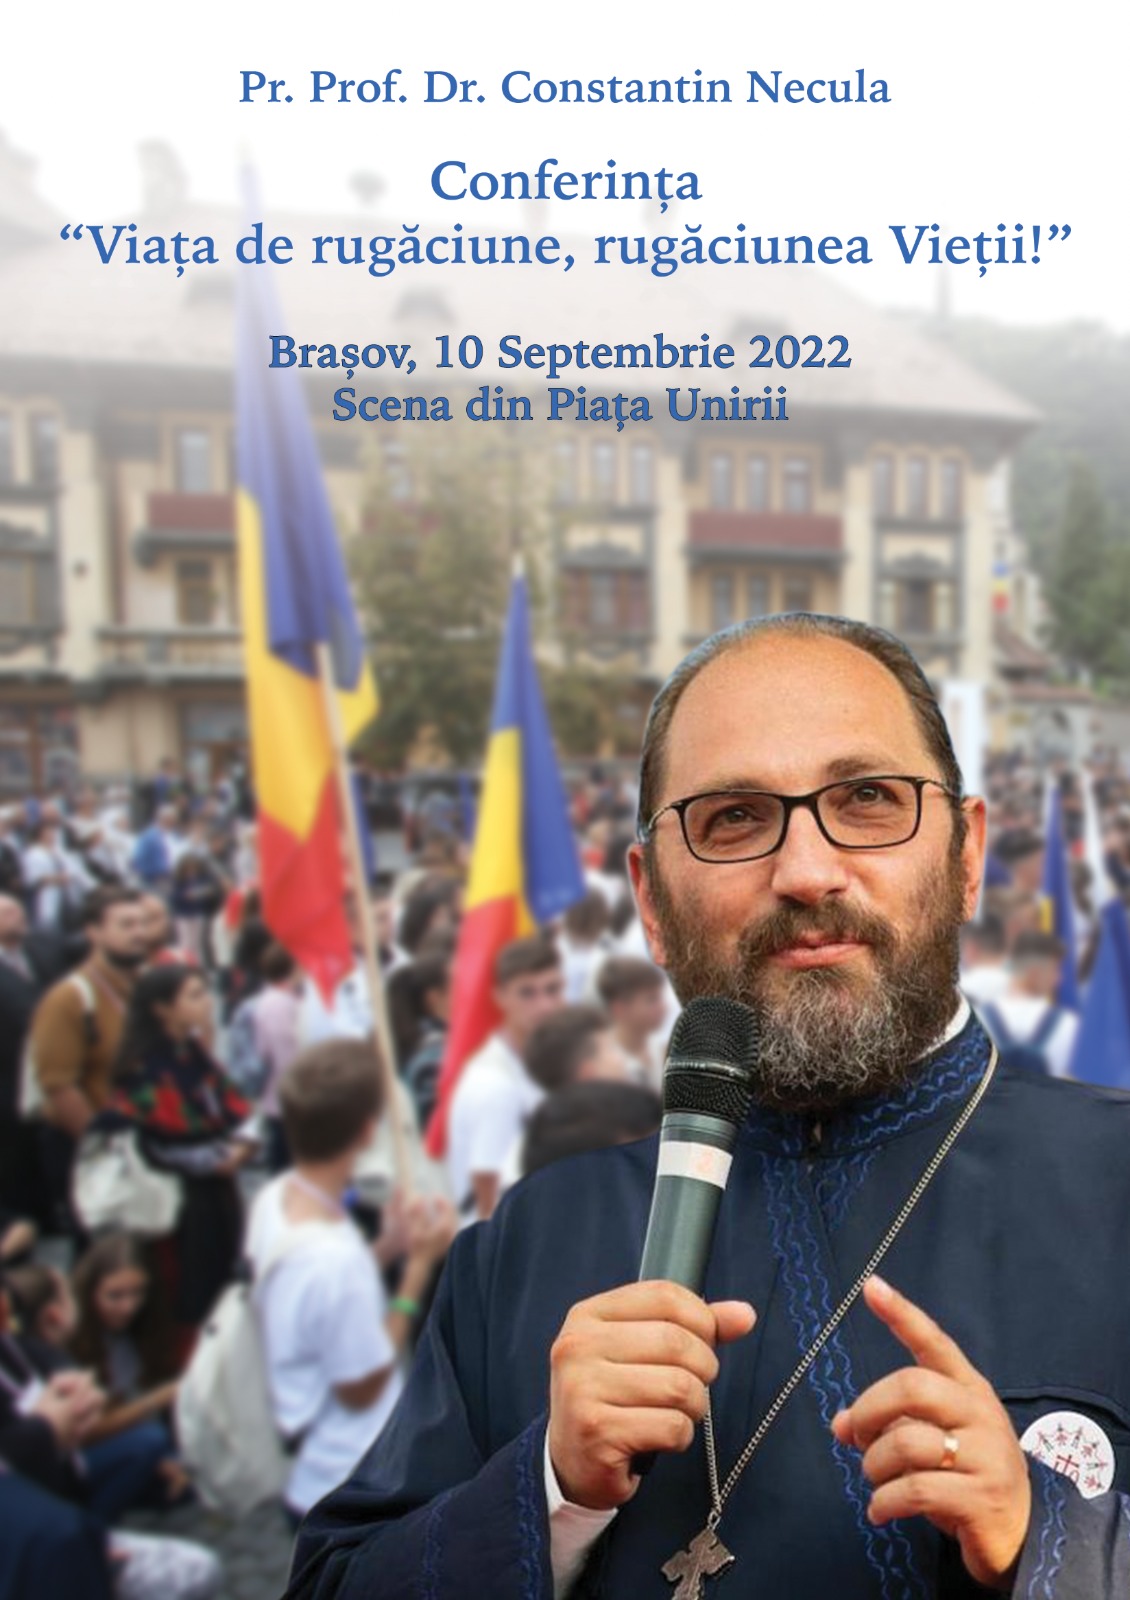 Părintele Constantin Necula va conferenția în cadrul evenimentului ITO Brașov 2022